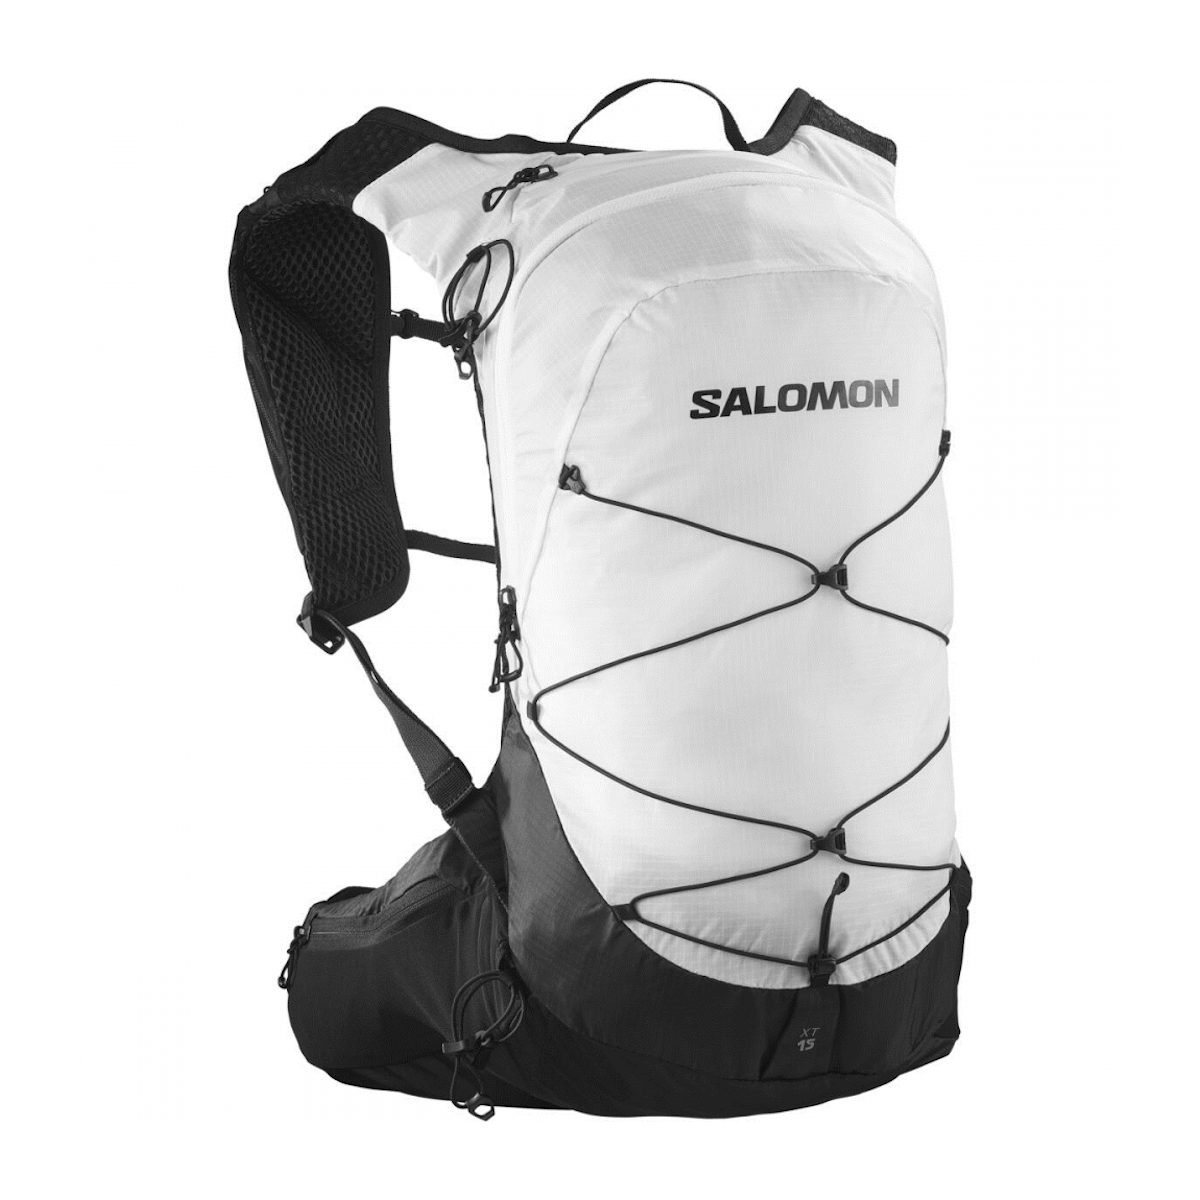 SALOMON XT 10 backpack - white/black